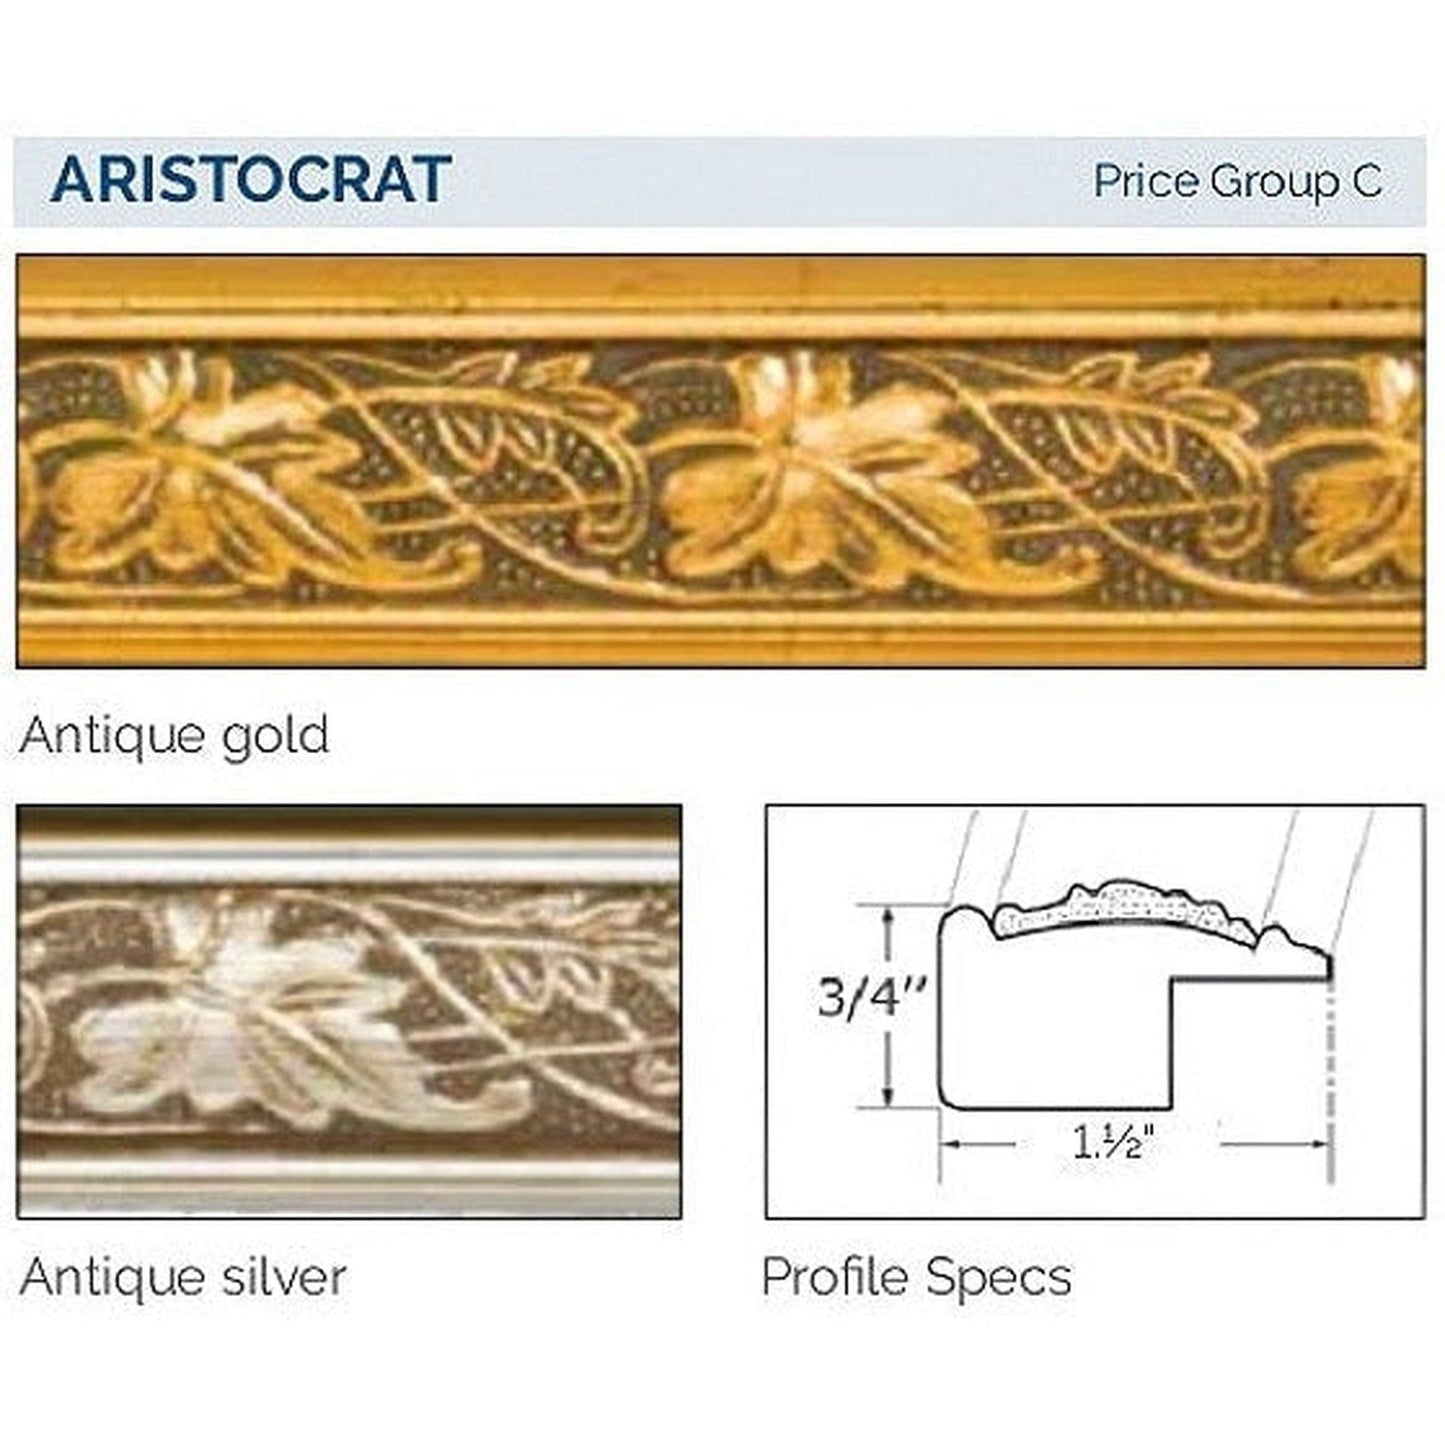 Afina Signature 24" x 30" Aristocrat Antique Gold Recessed Reversible Hinged Single Door Medicine Cabinet With Beveled Edge Mirror